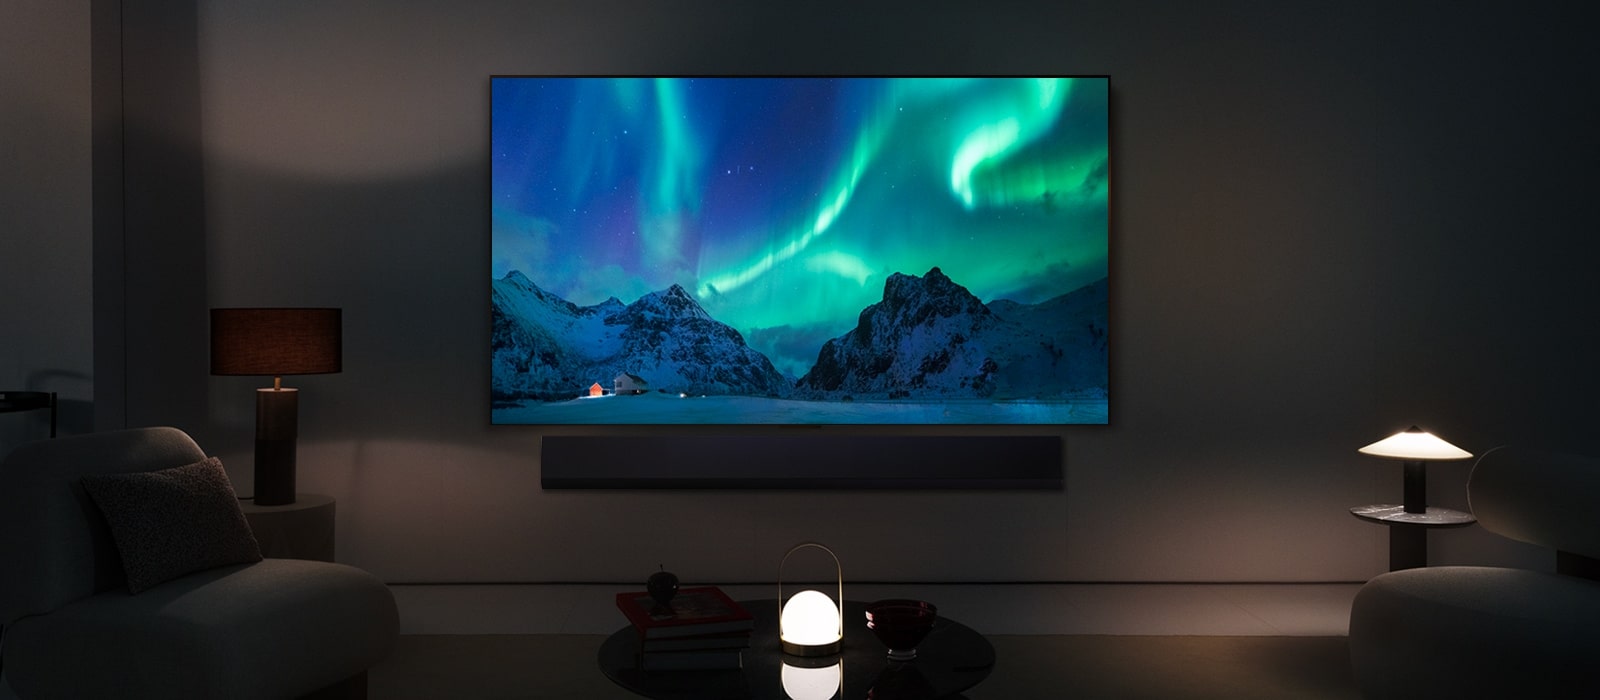 LG OLED TV og LG Soundbar i en moderne stue om natten. Skærmbilledet af nordlyset vises med ideelle lysniveauer.